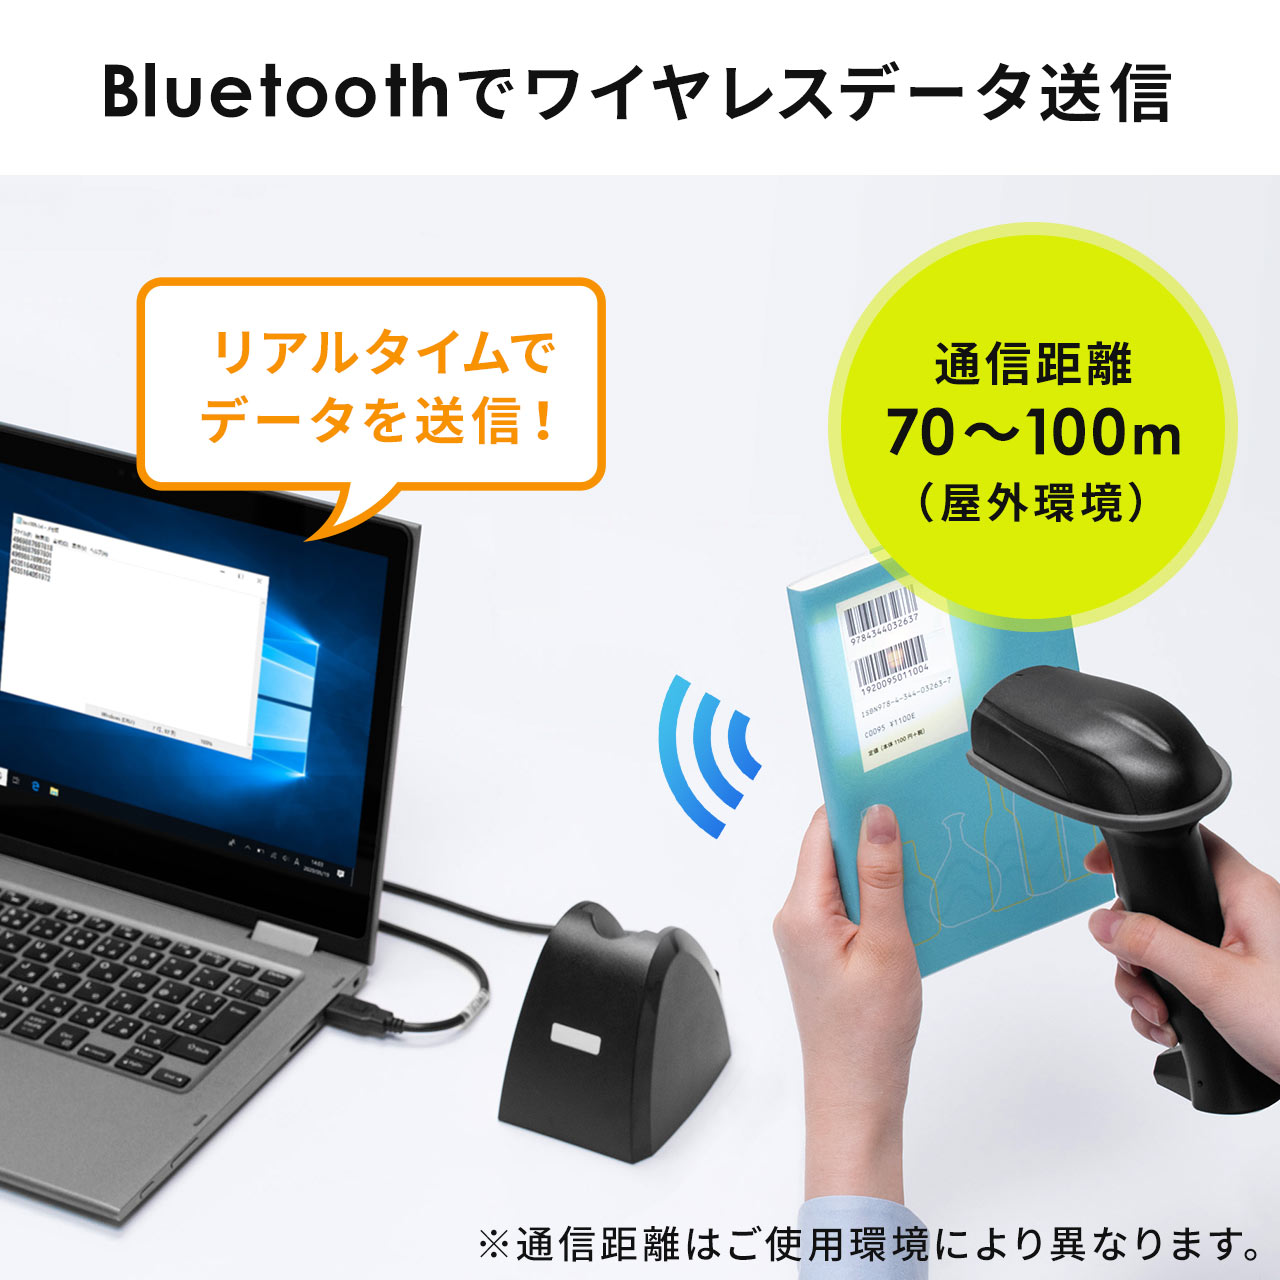 バーコードリーダー 無線 Bluetooth USB充電 防塵防水IP42 耐衝撃 1次元/2次元バーコード JANコード QRコード キャッシュレス 液晶画面 ストラップ付 図書館 クレードル付 400-BCR004